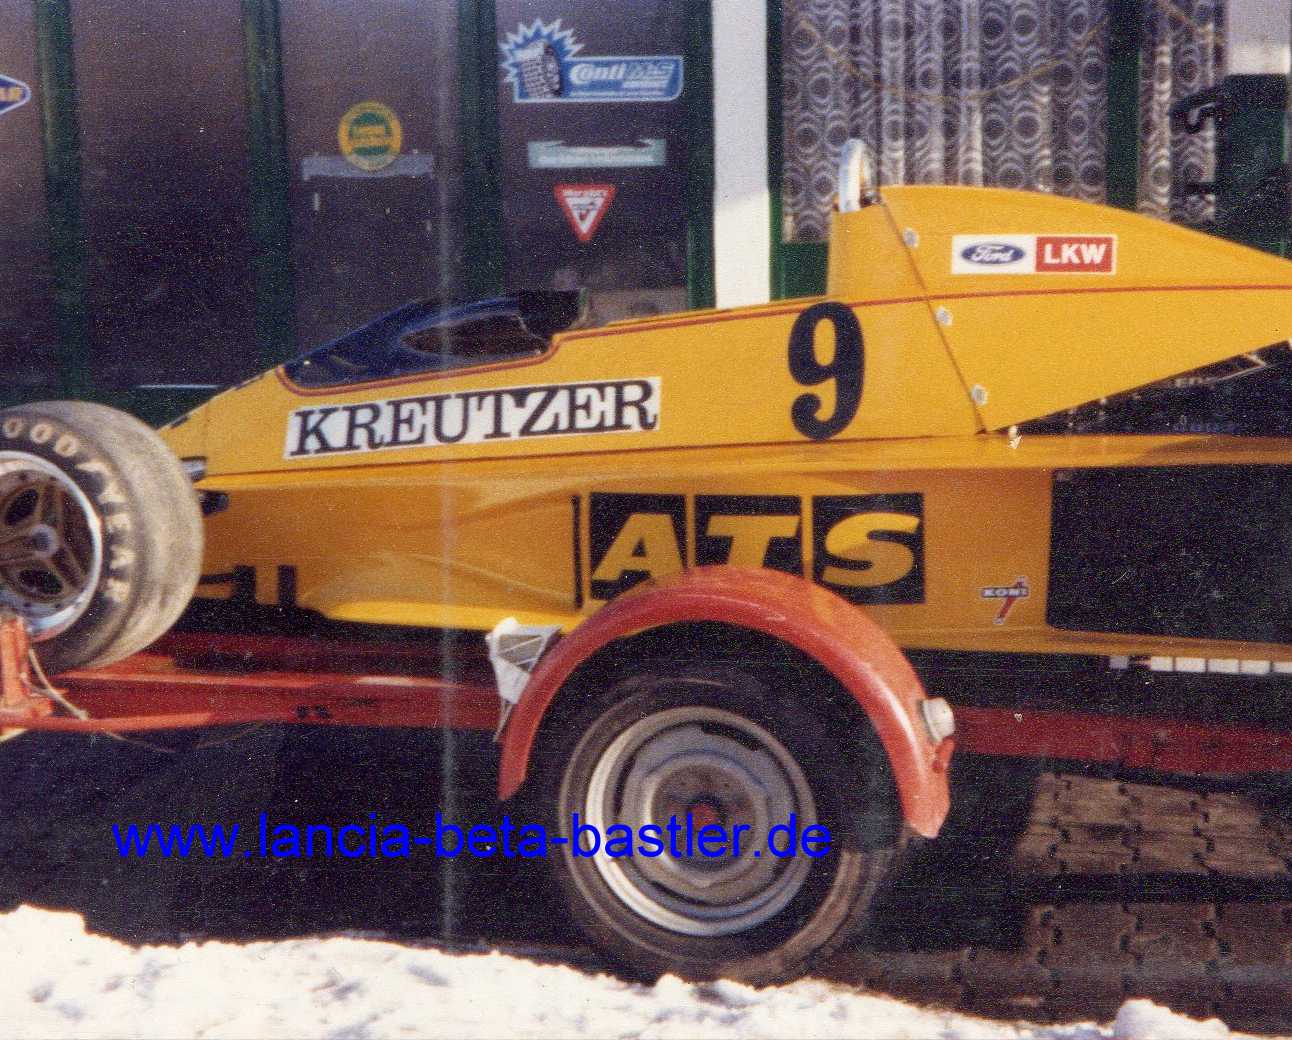 ATS Formel 1 Wagen 1979 März mit Kreutzer Schriftzug